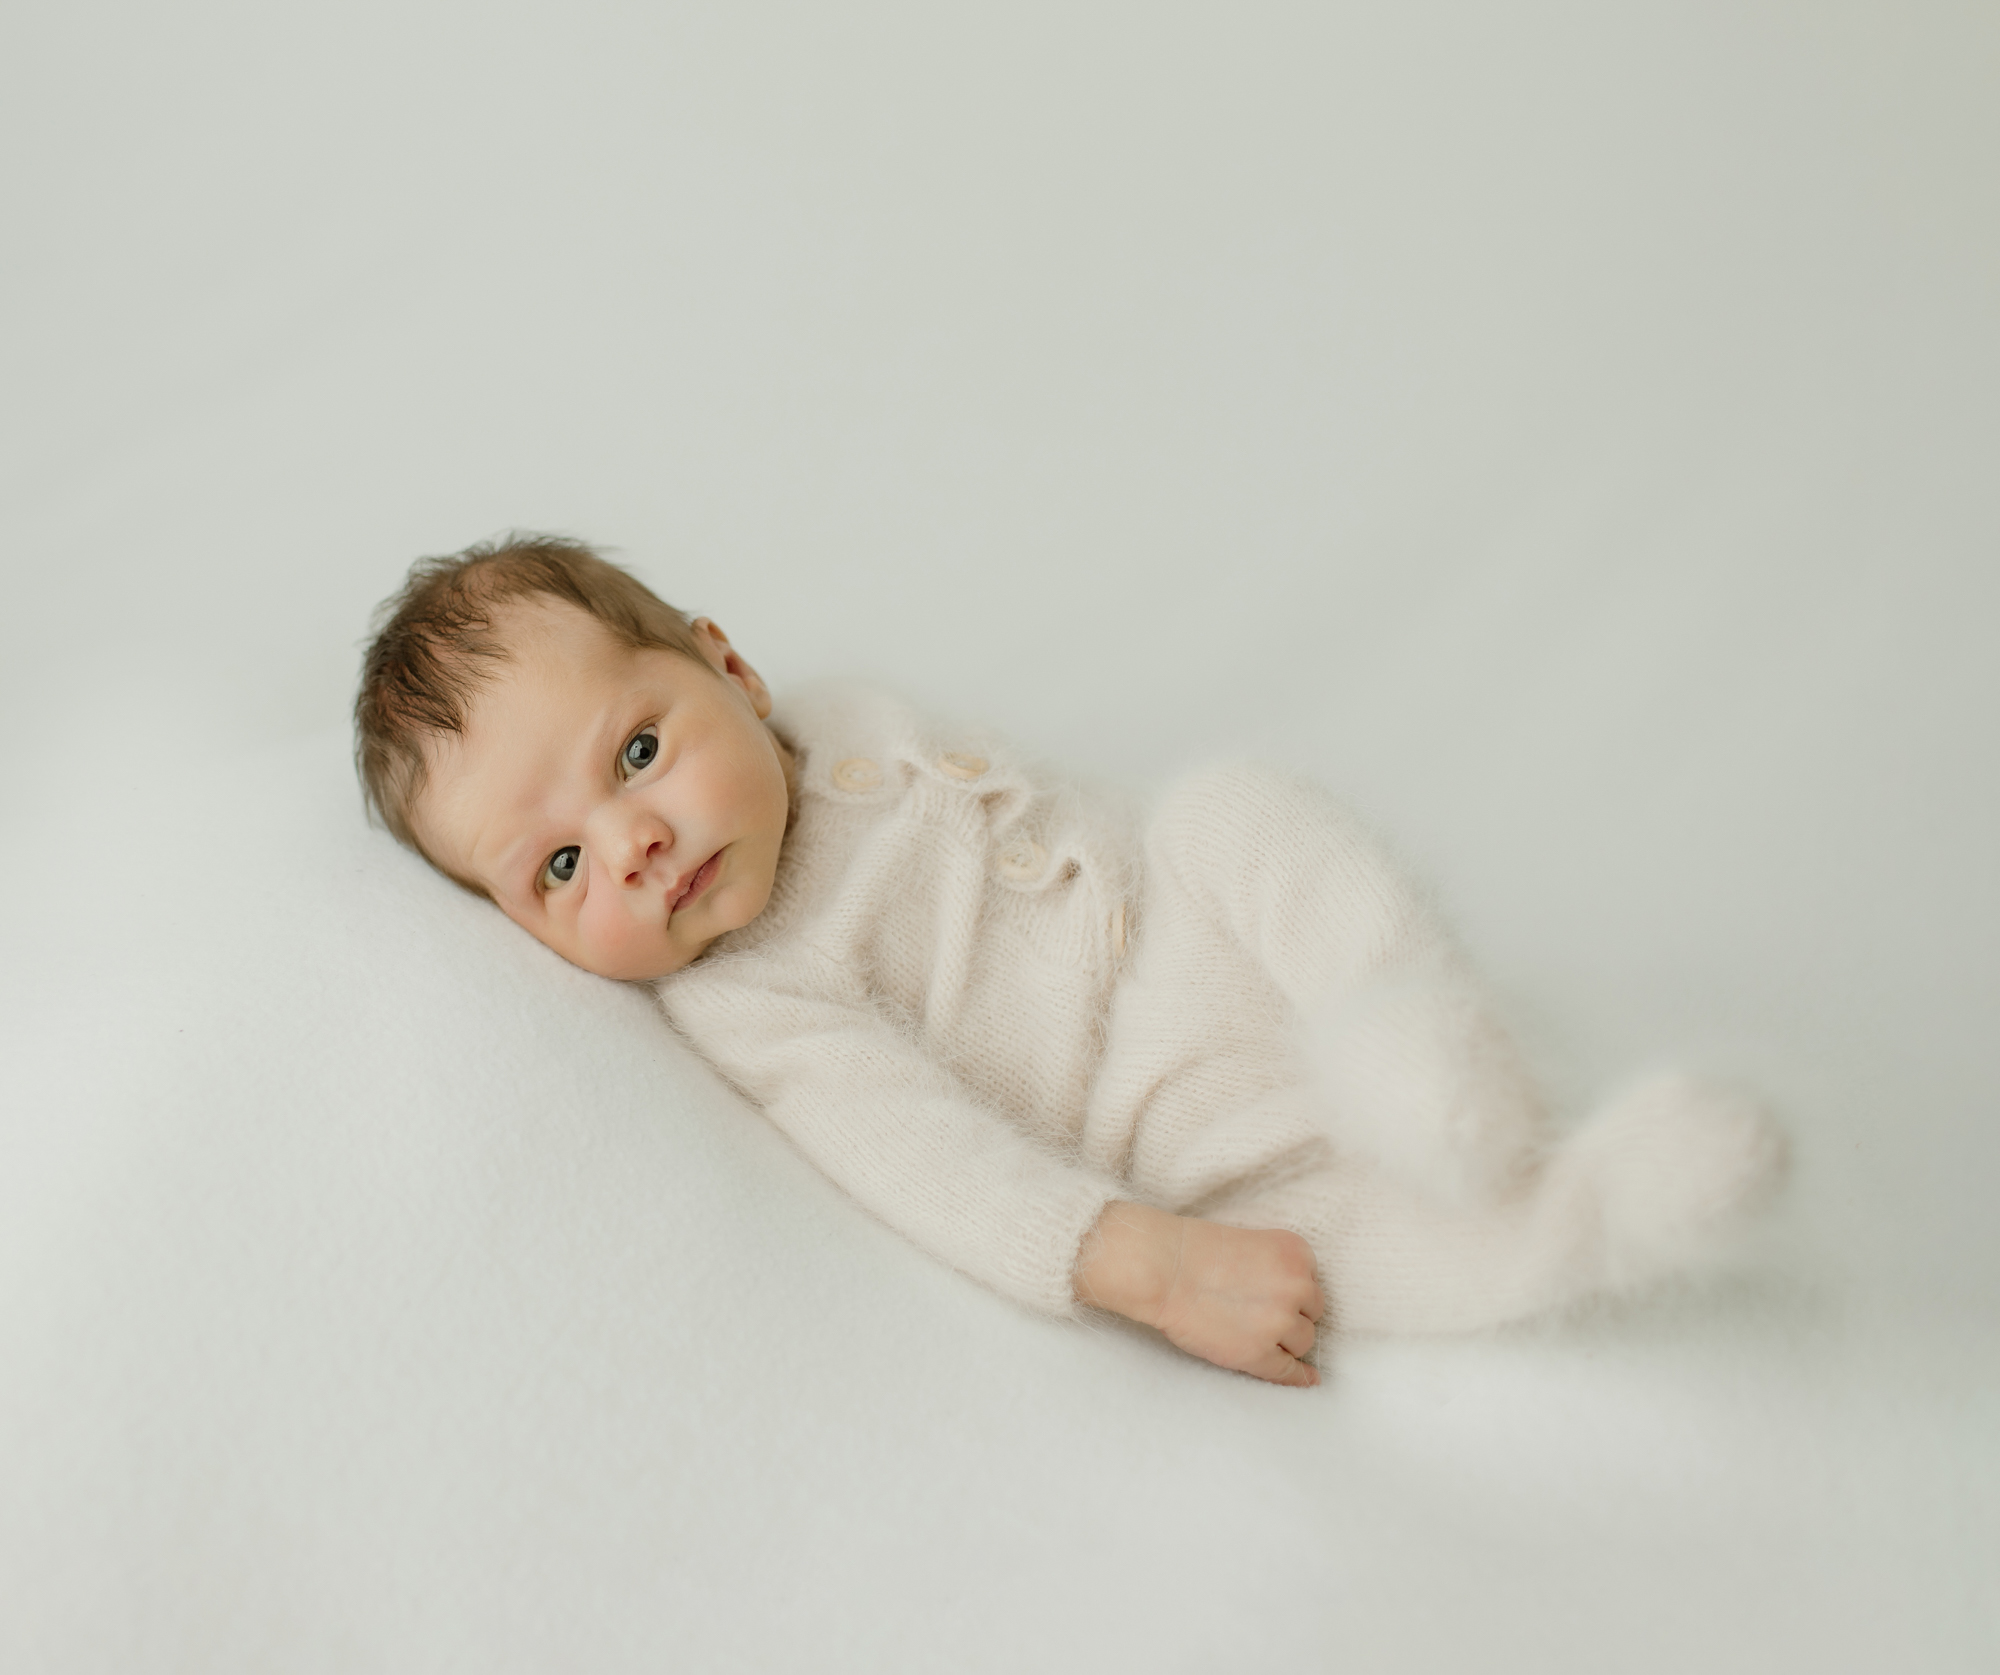 Newborn portrait of baby in fuzzy white pajamas